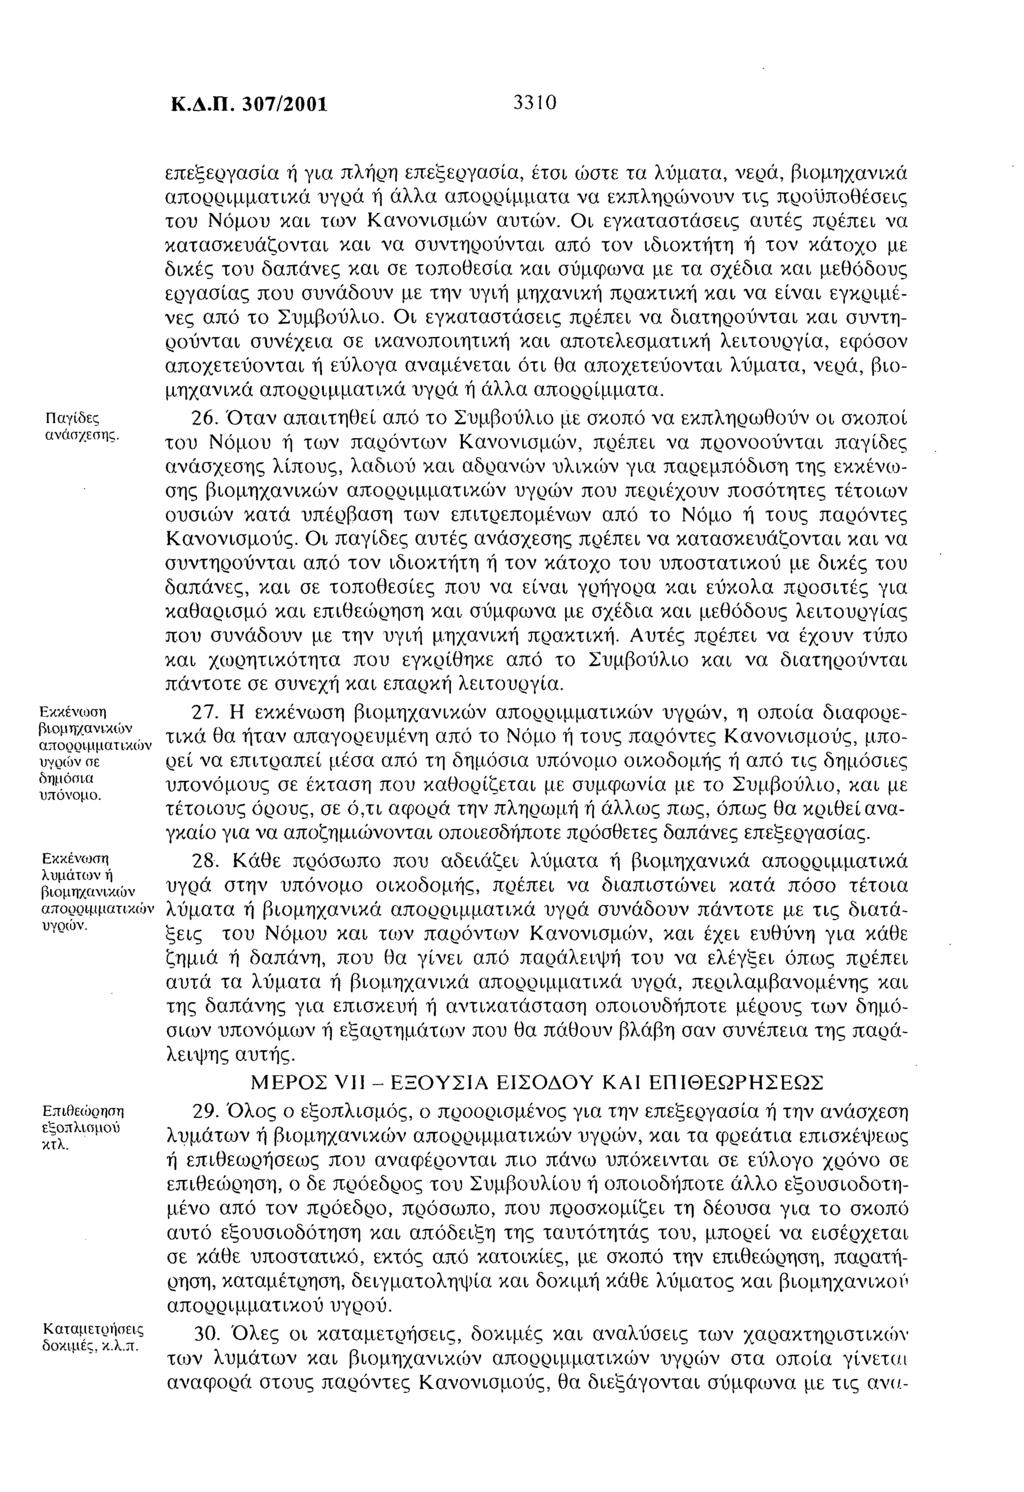 Κ.Δ.Π. 307/2001 3310 Παγίδες ανάσχεσης Εκκένωση βιομηχανικών απορριμματικών υγρών σε δημόσια υπόνομο. Εκκένωση λυμάτων ή βιομηχανικών απορριμματικών υγοών. Επιθεώρηση εξοπλισμού κτλ.